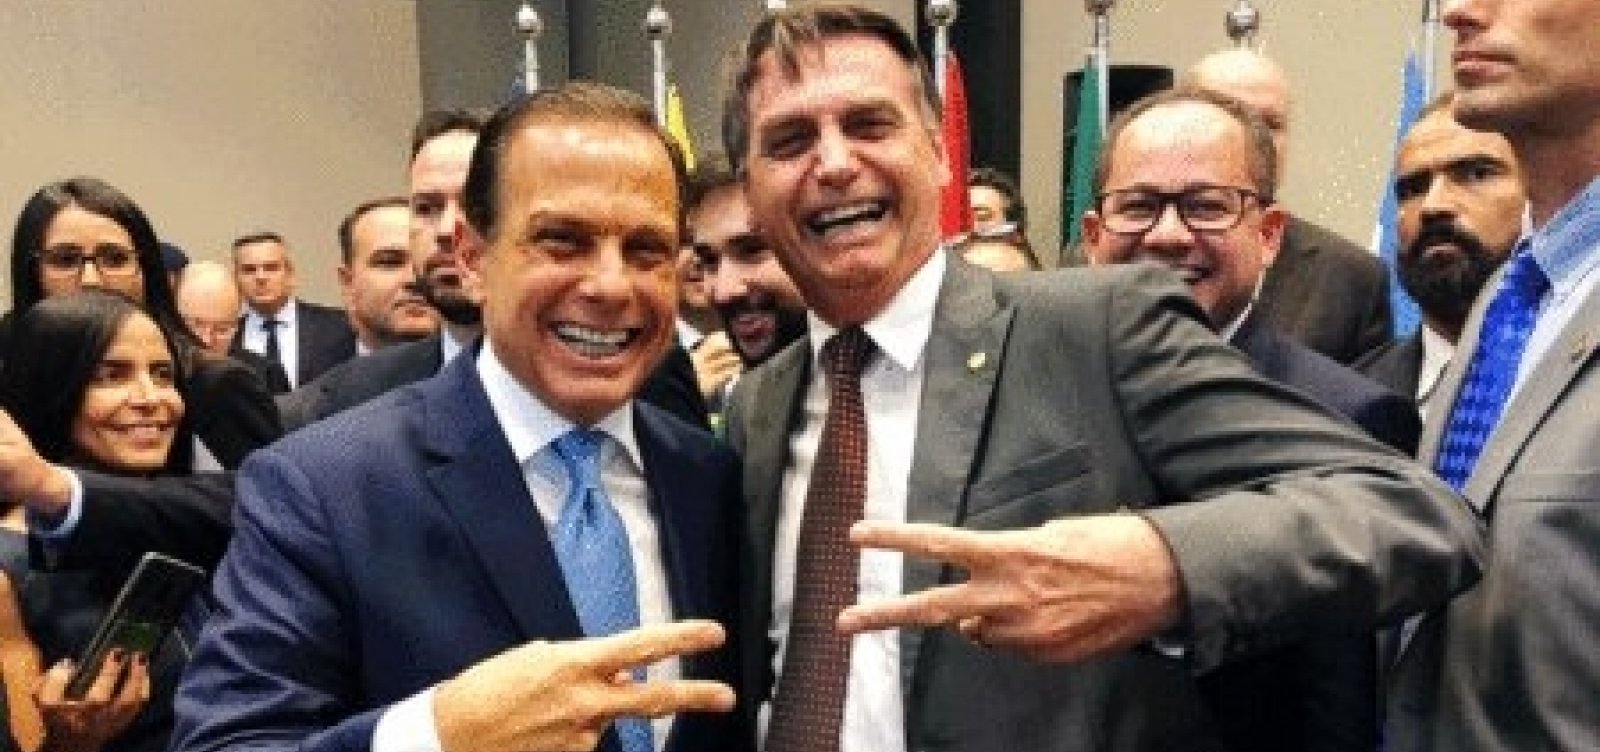 Após início da vacinação, popularidade de Bolsonaro cai e de Doria cresce